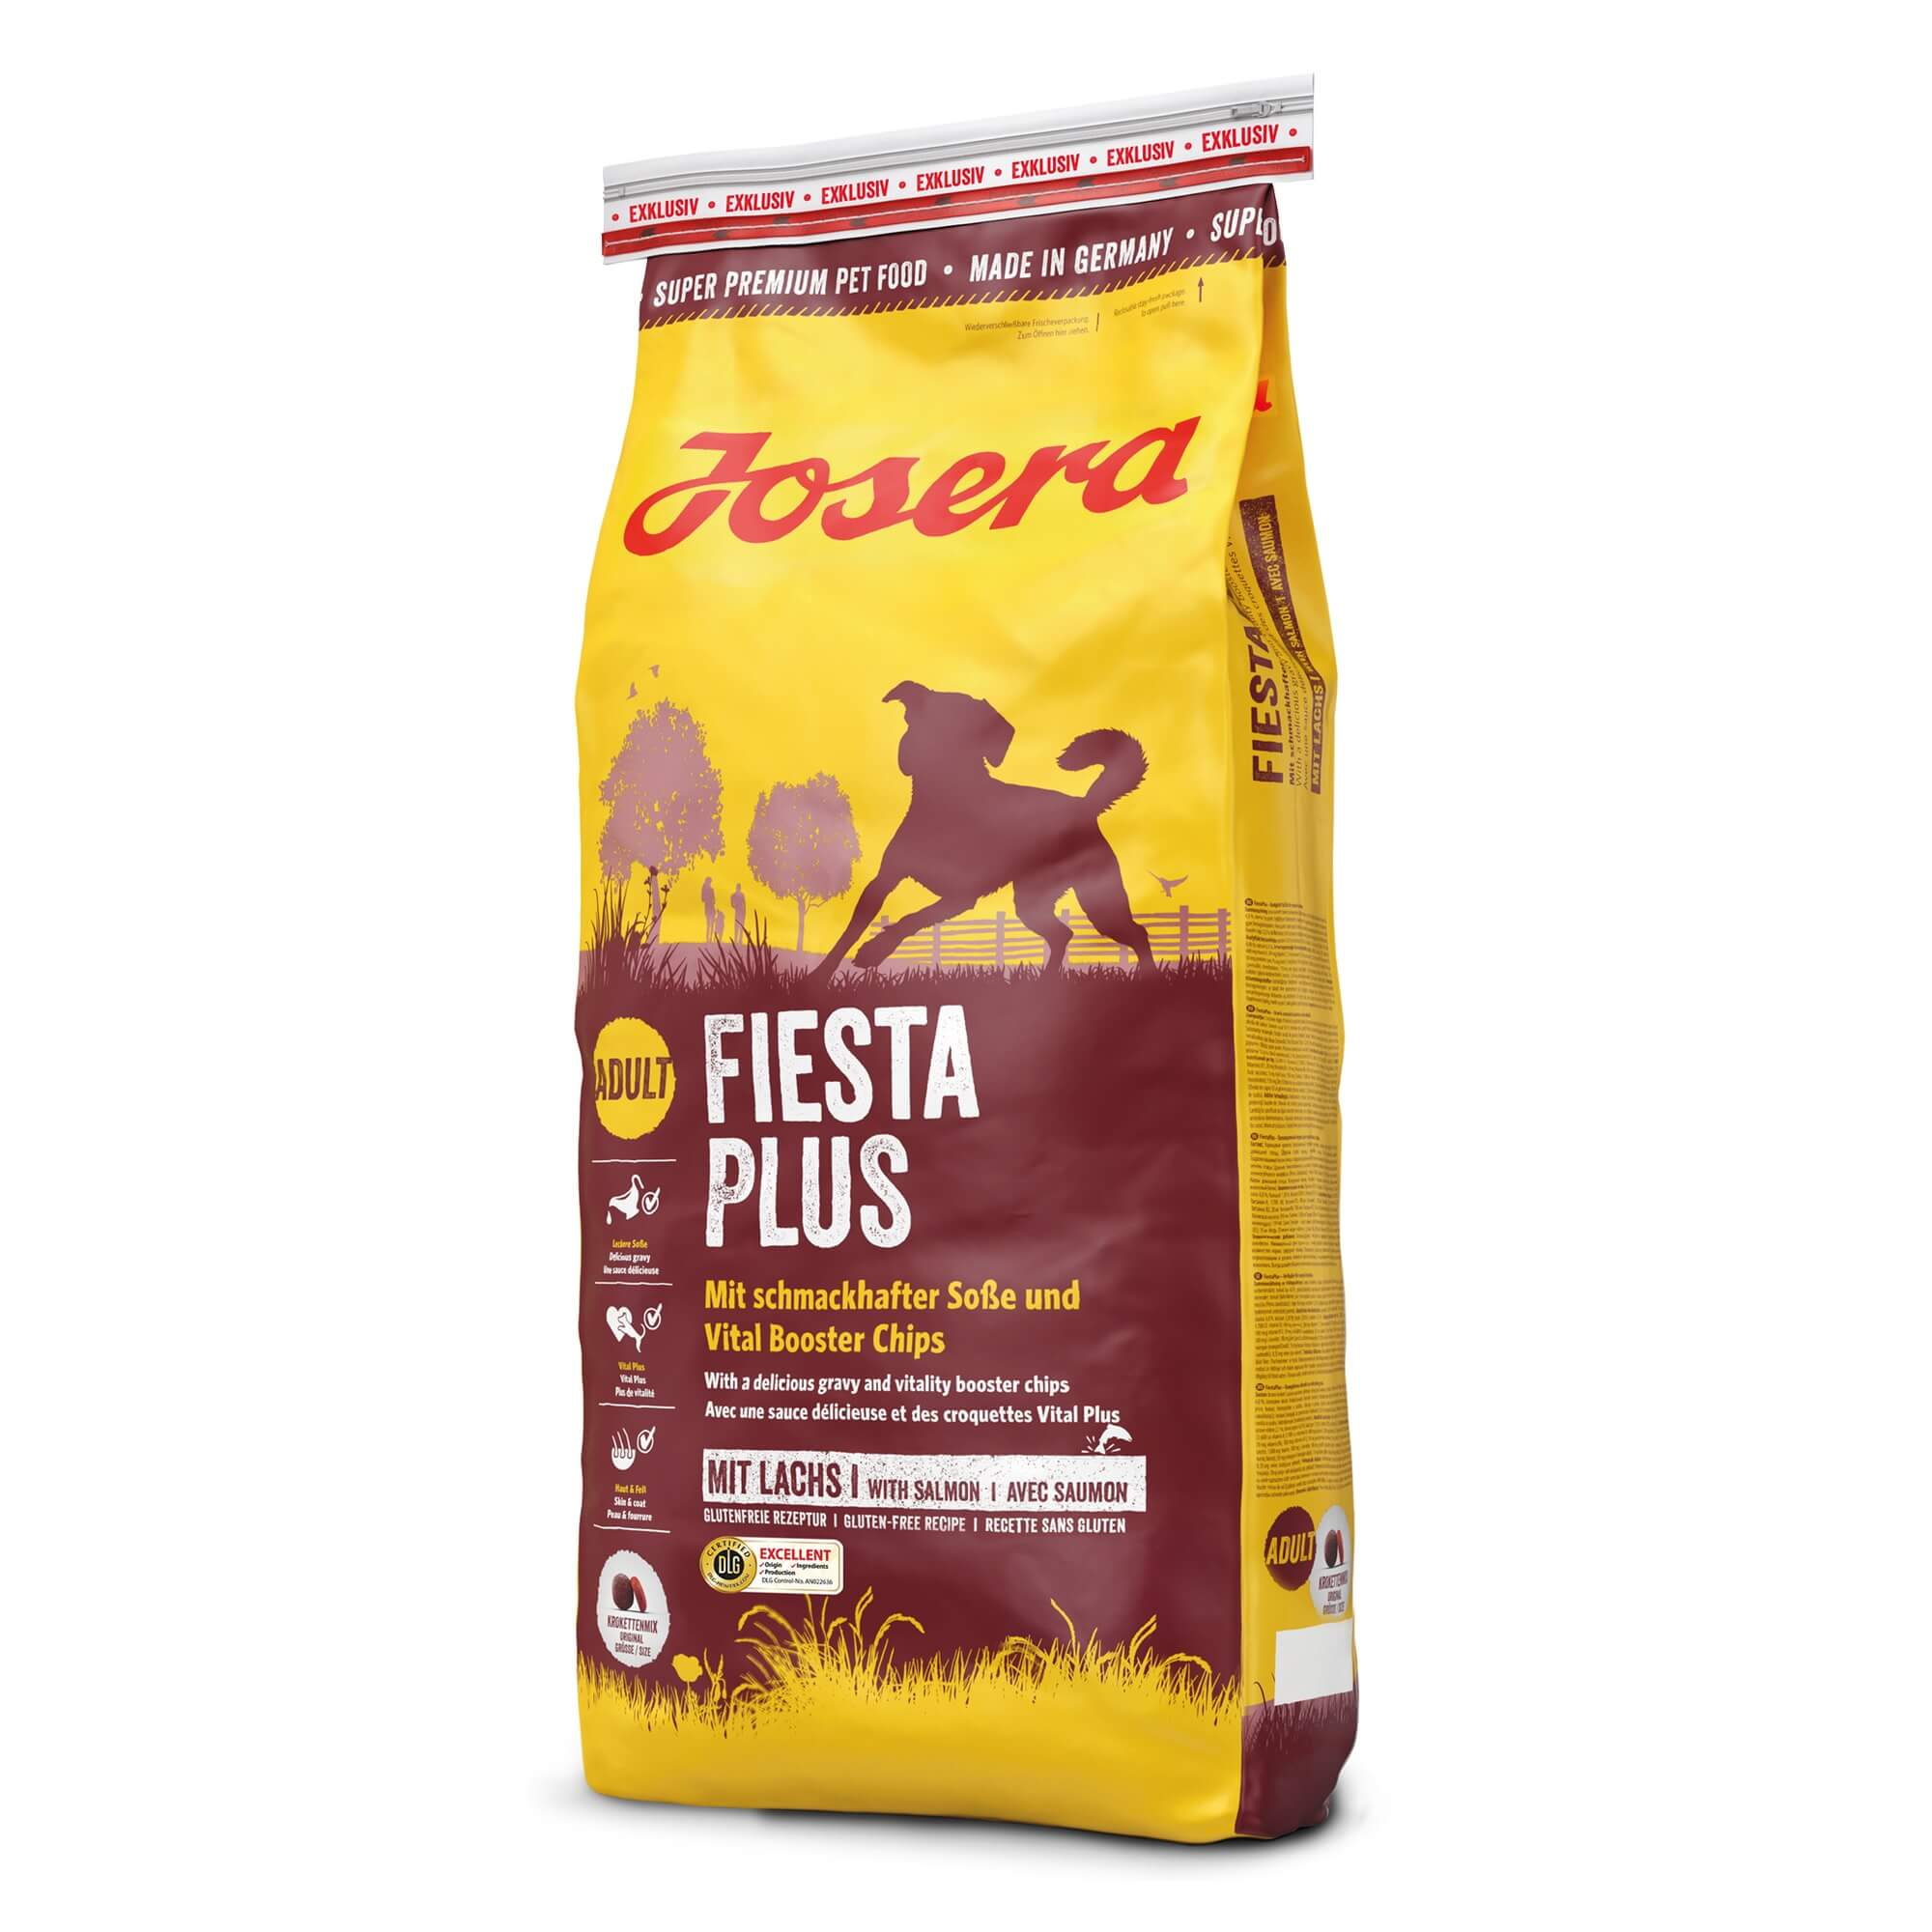 Josera Fiestaplus - hundefoder med værdifulde vitaminer og mineraler